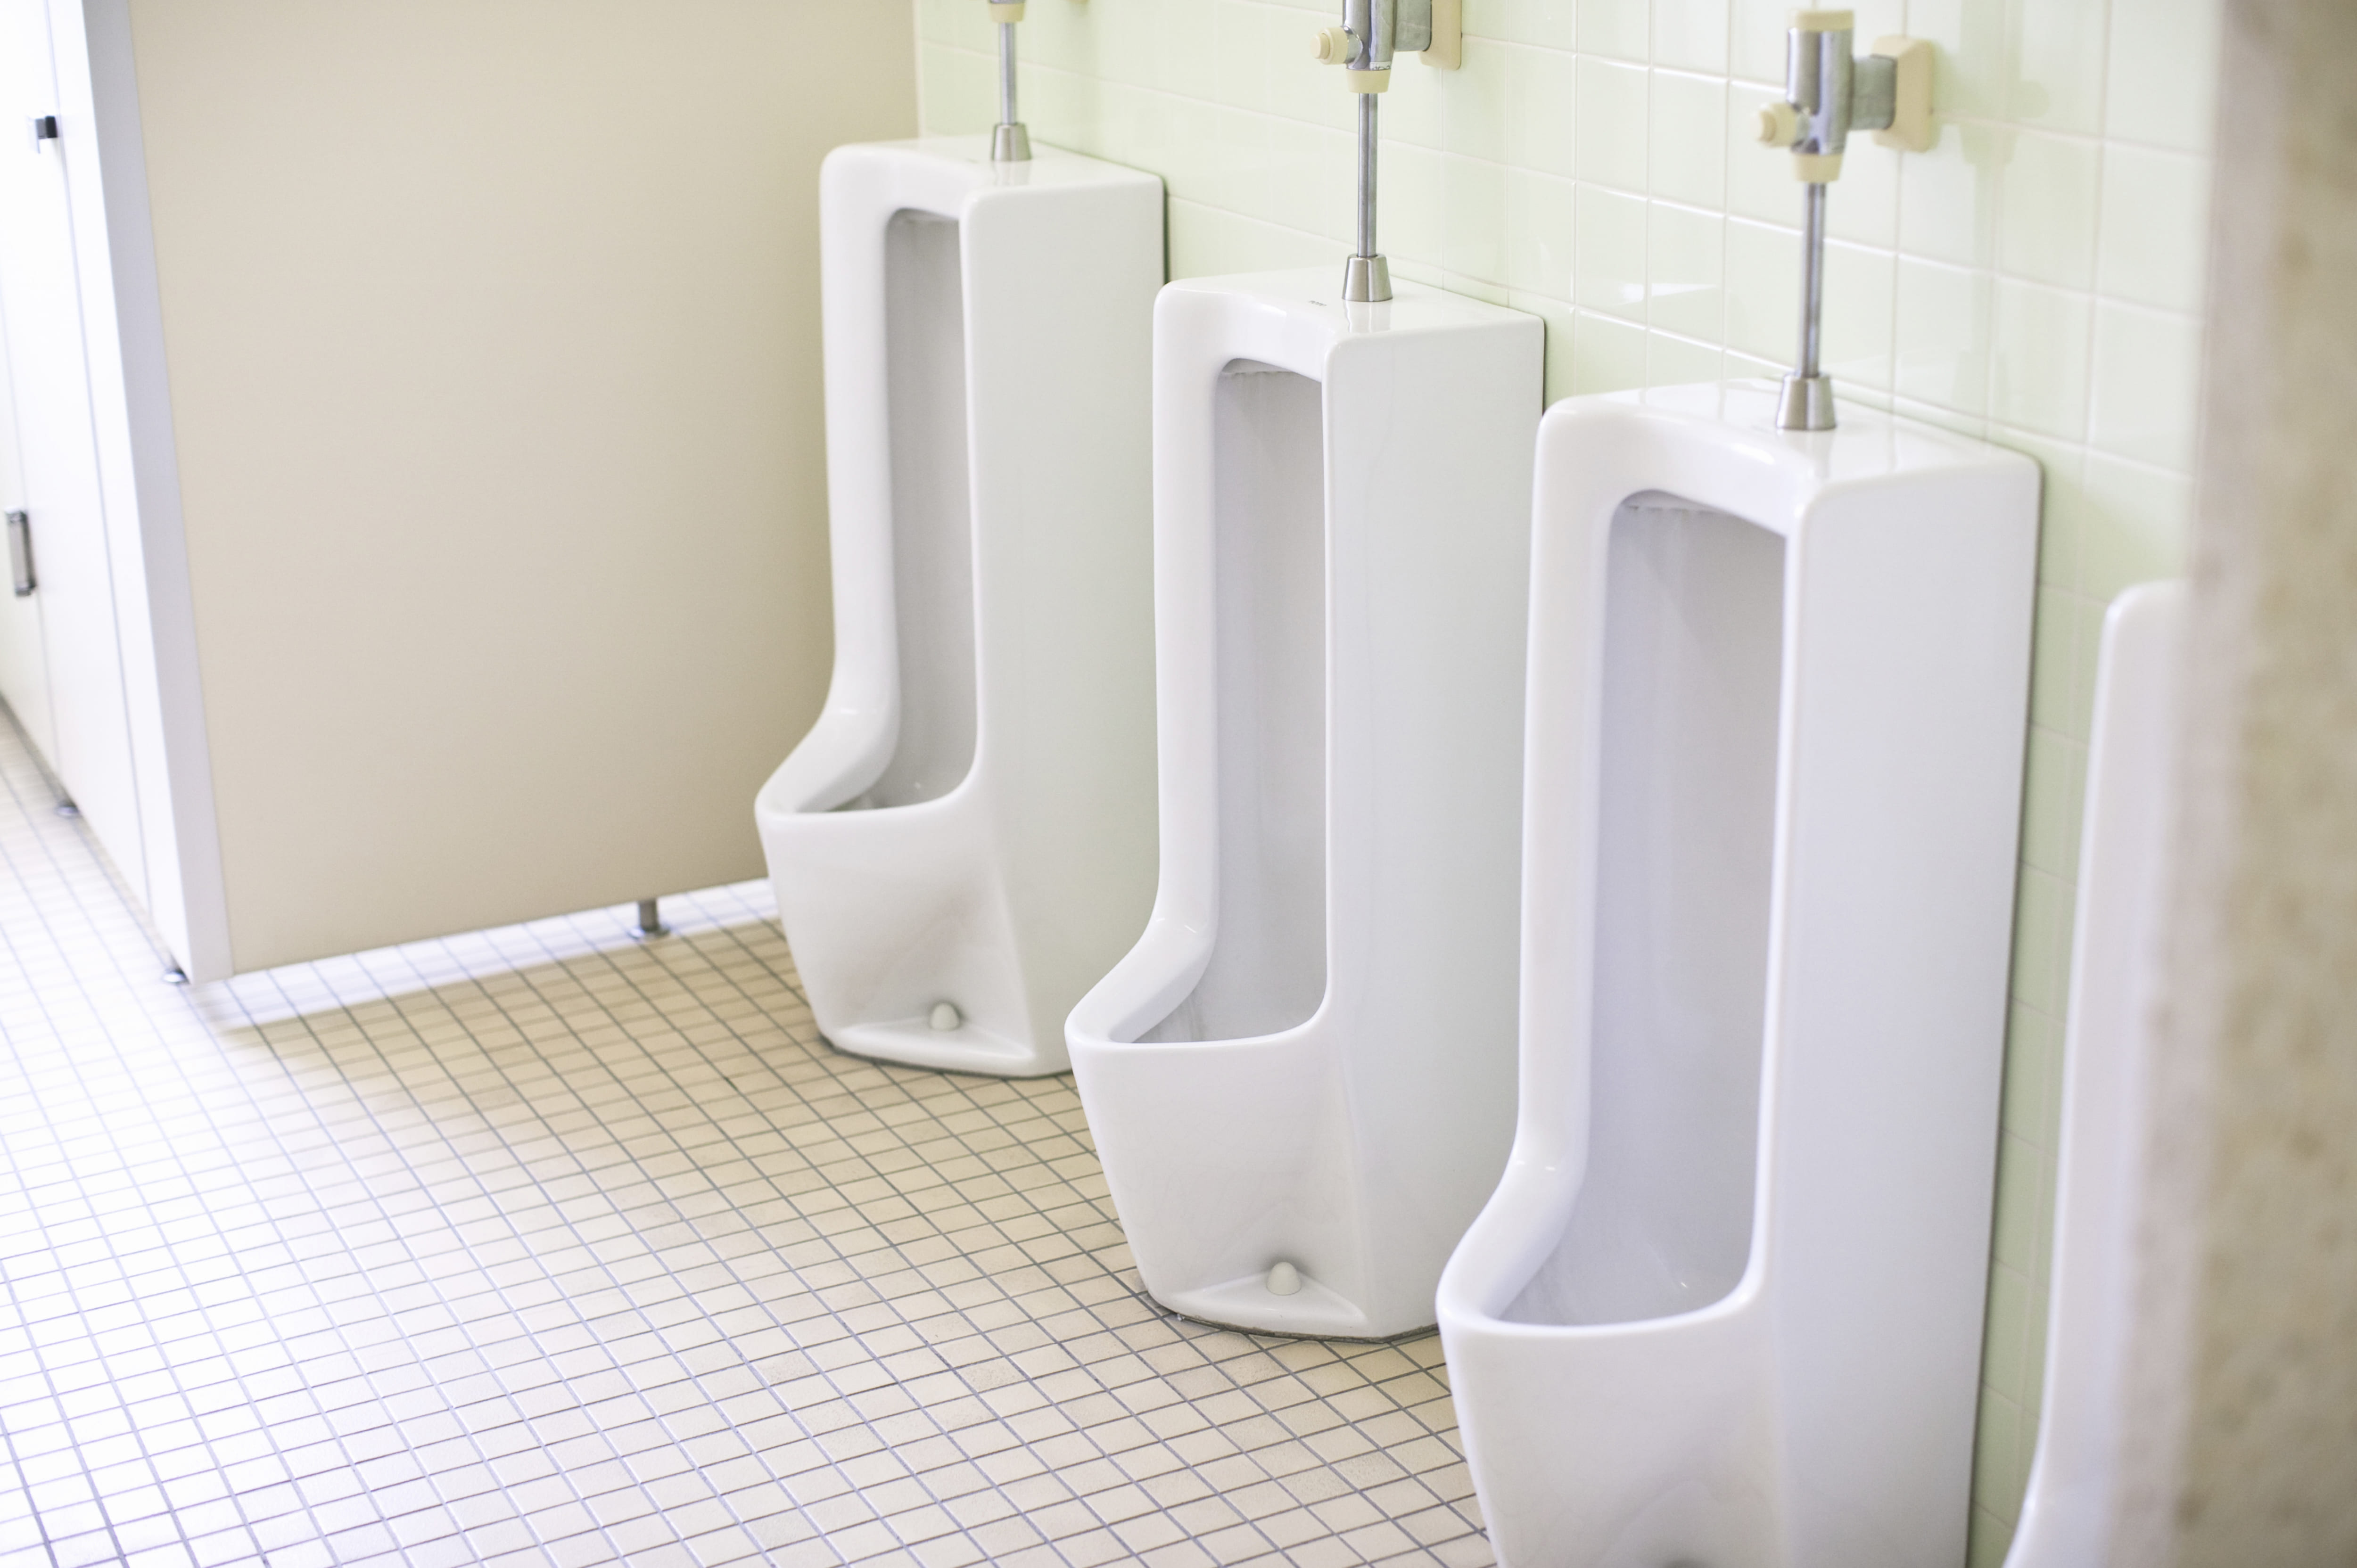 35年間、立ちション丸見えの中学男子トイレ 「セクハラです」と生徒の訴えで改善へ ニコニコニュース